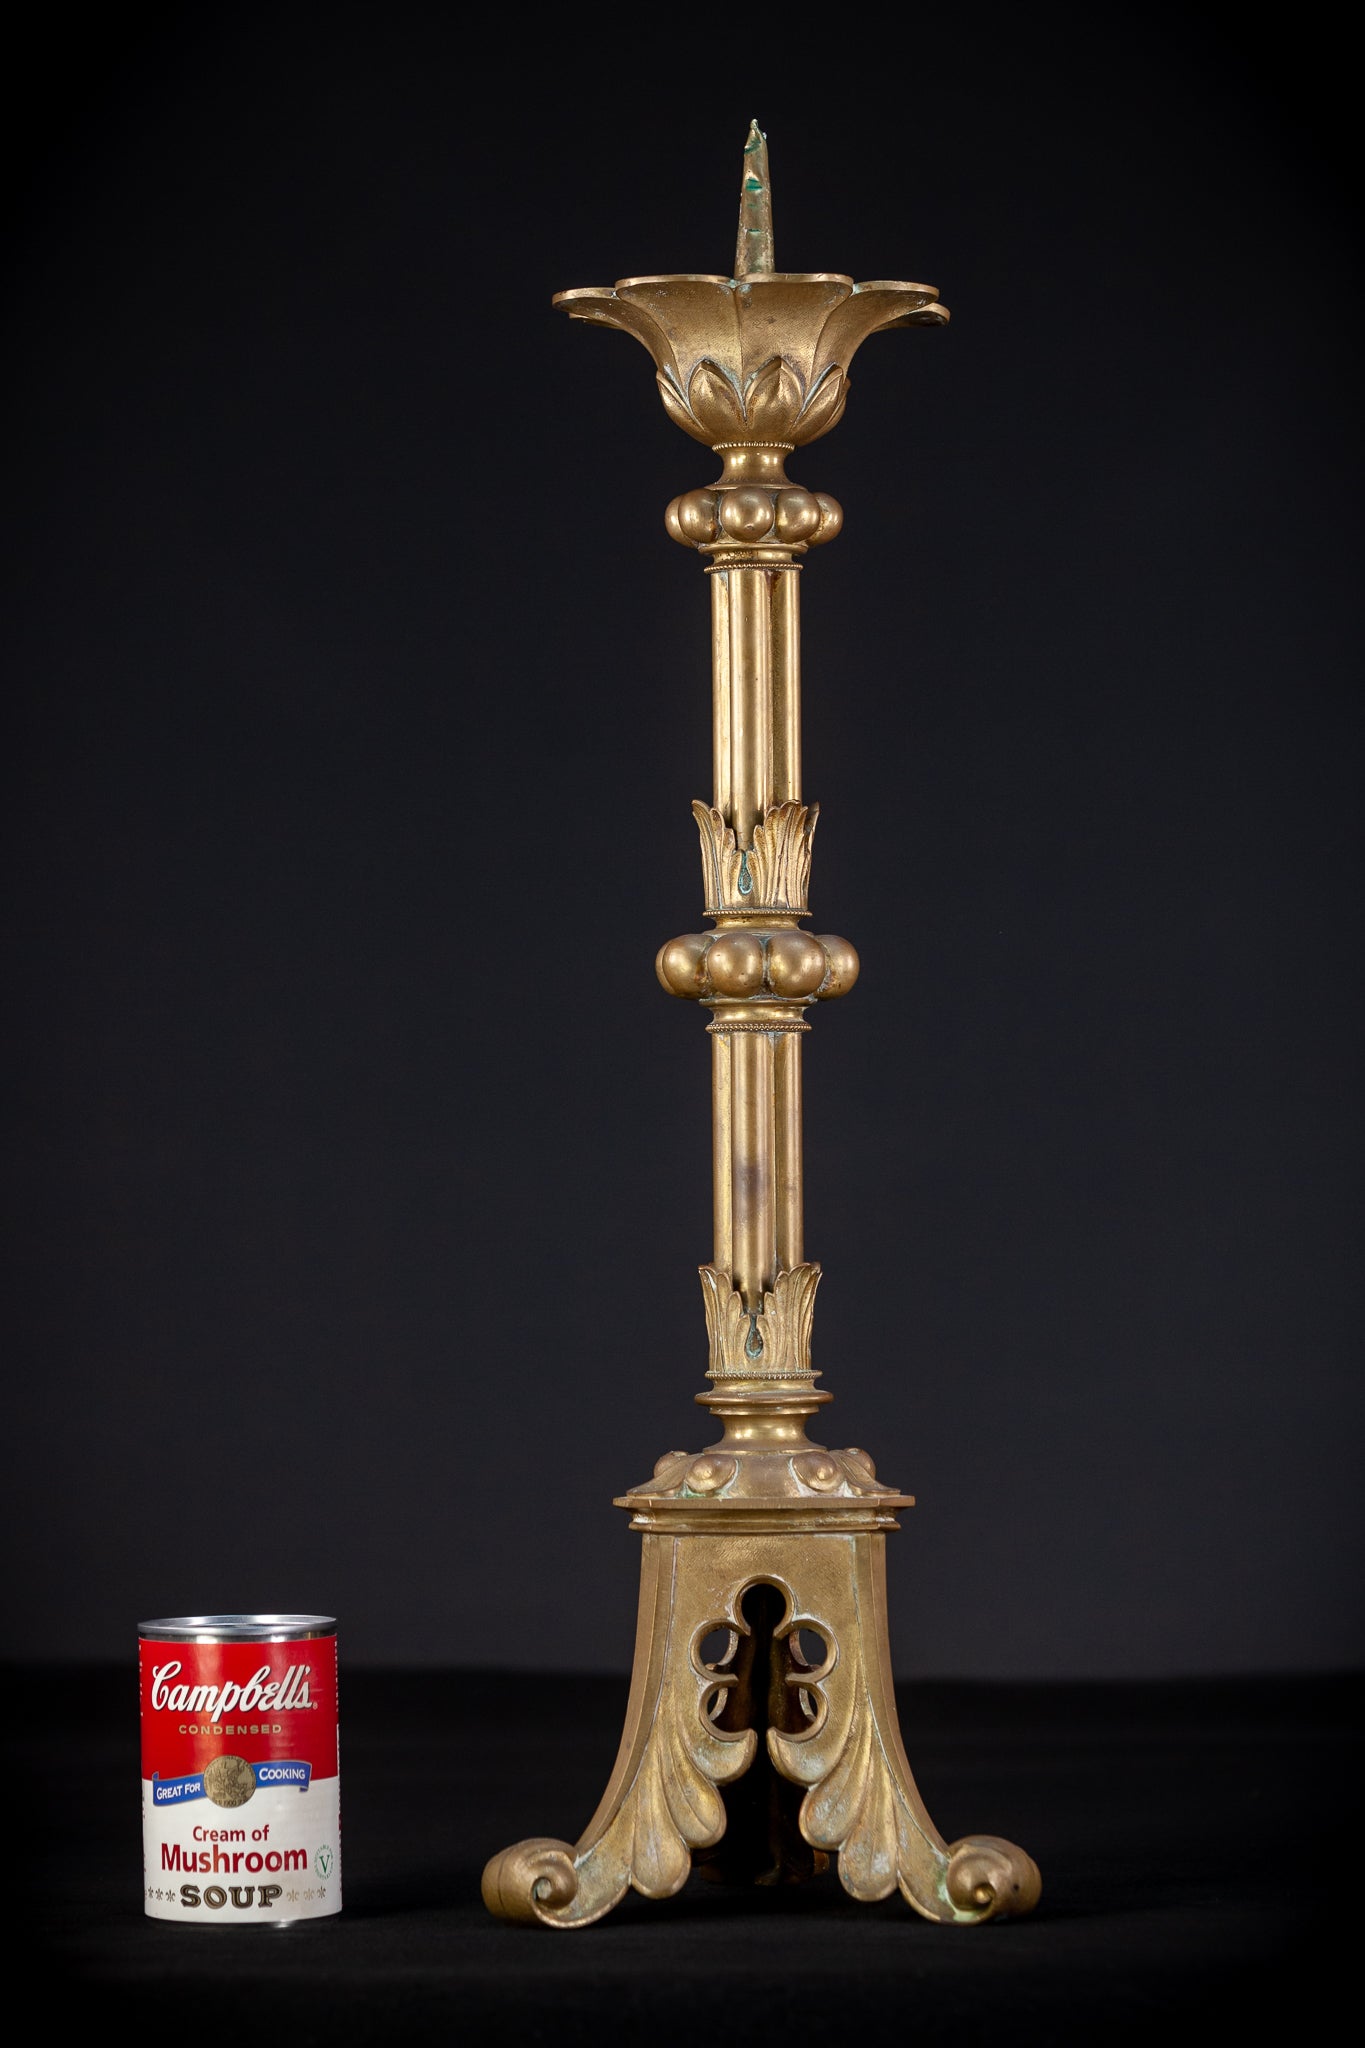 Pair of Gothic Bronze Candlesticks | 1800s Antique | 24.4" / 62 cm